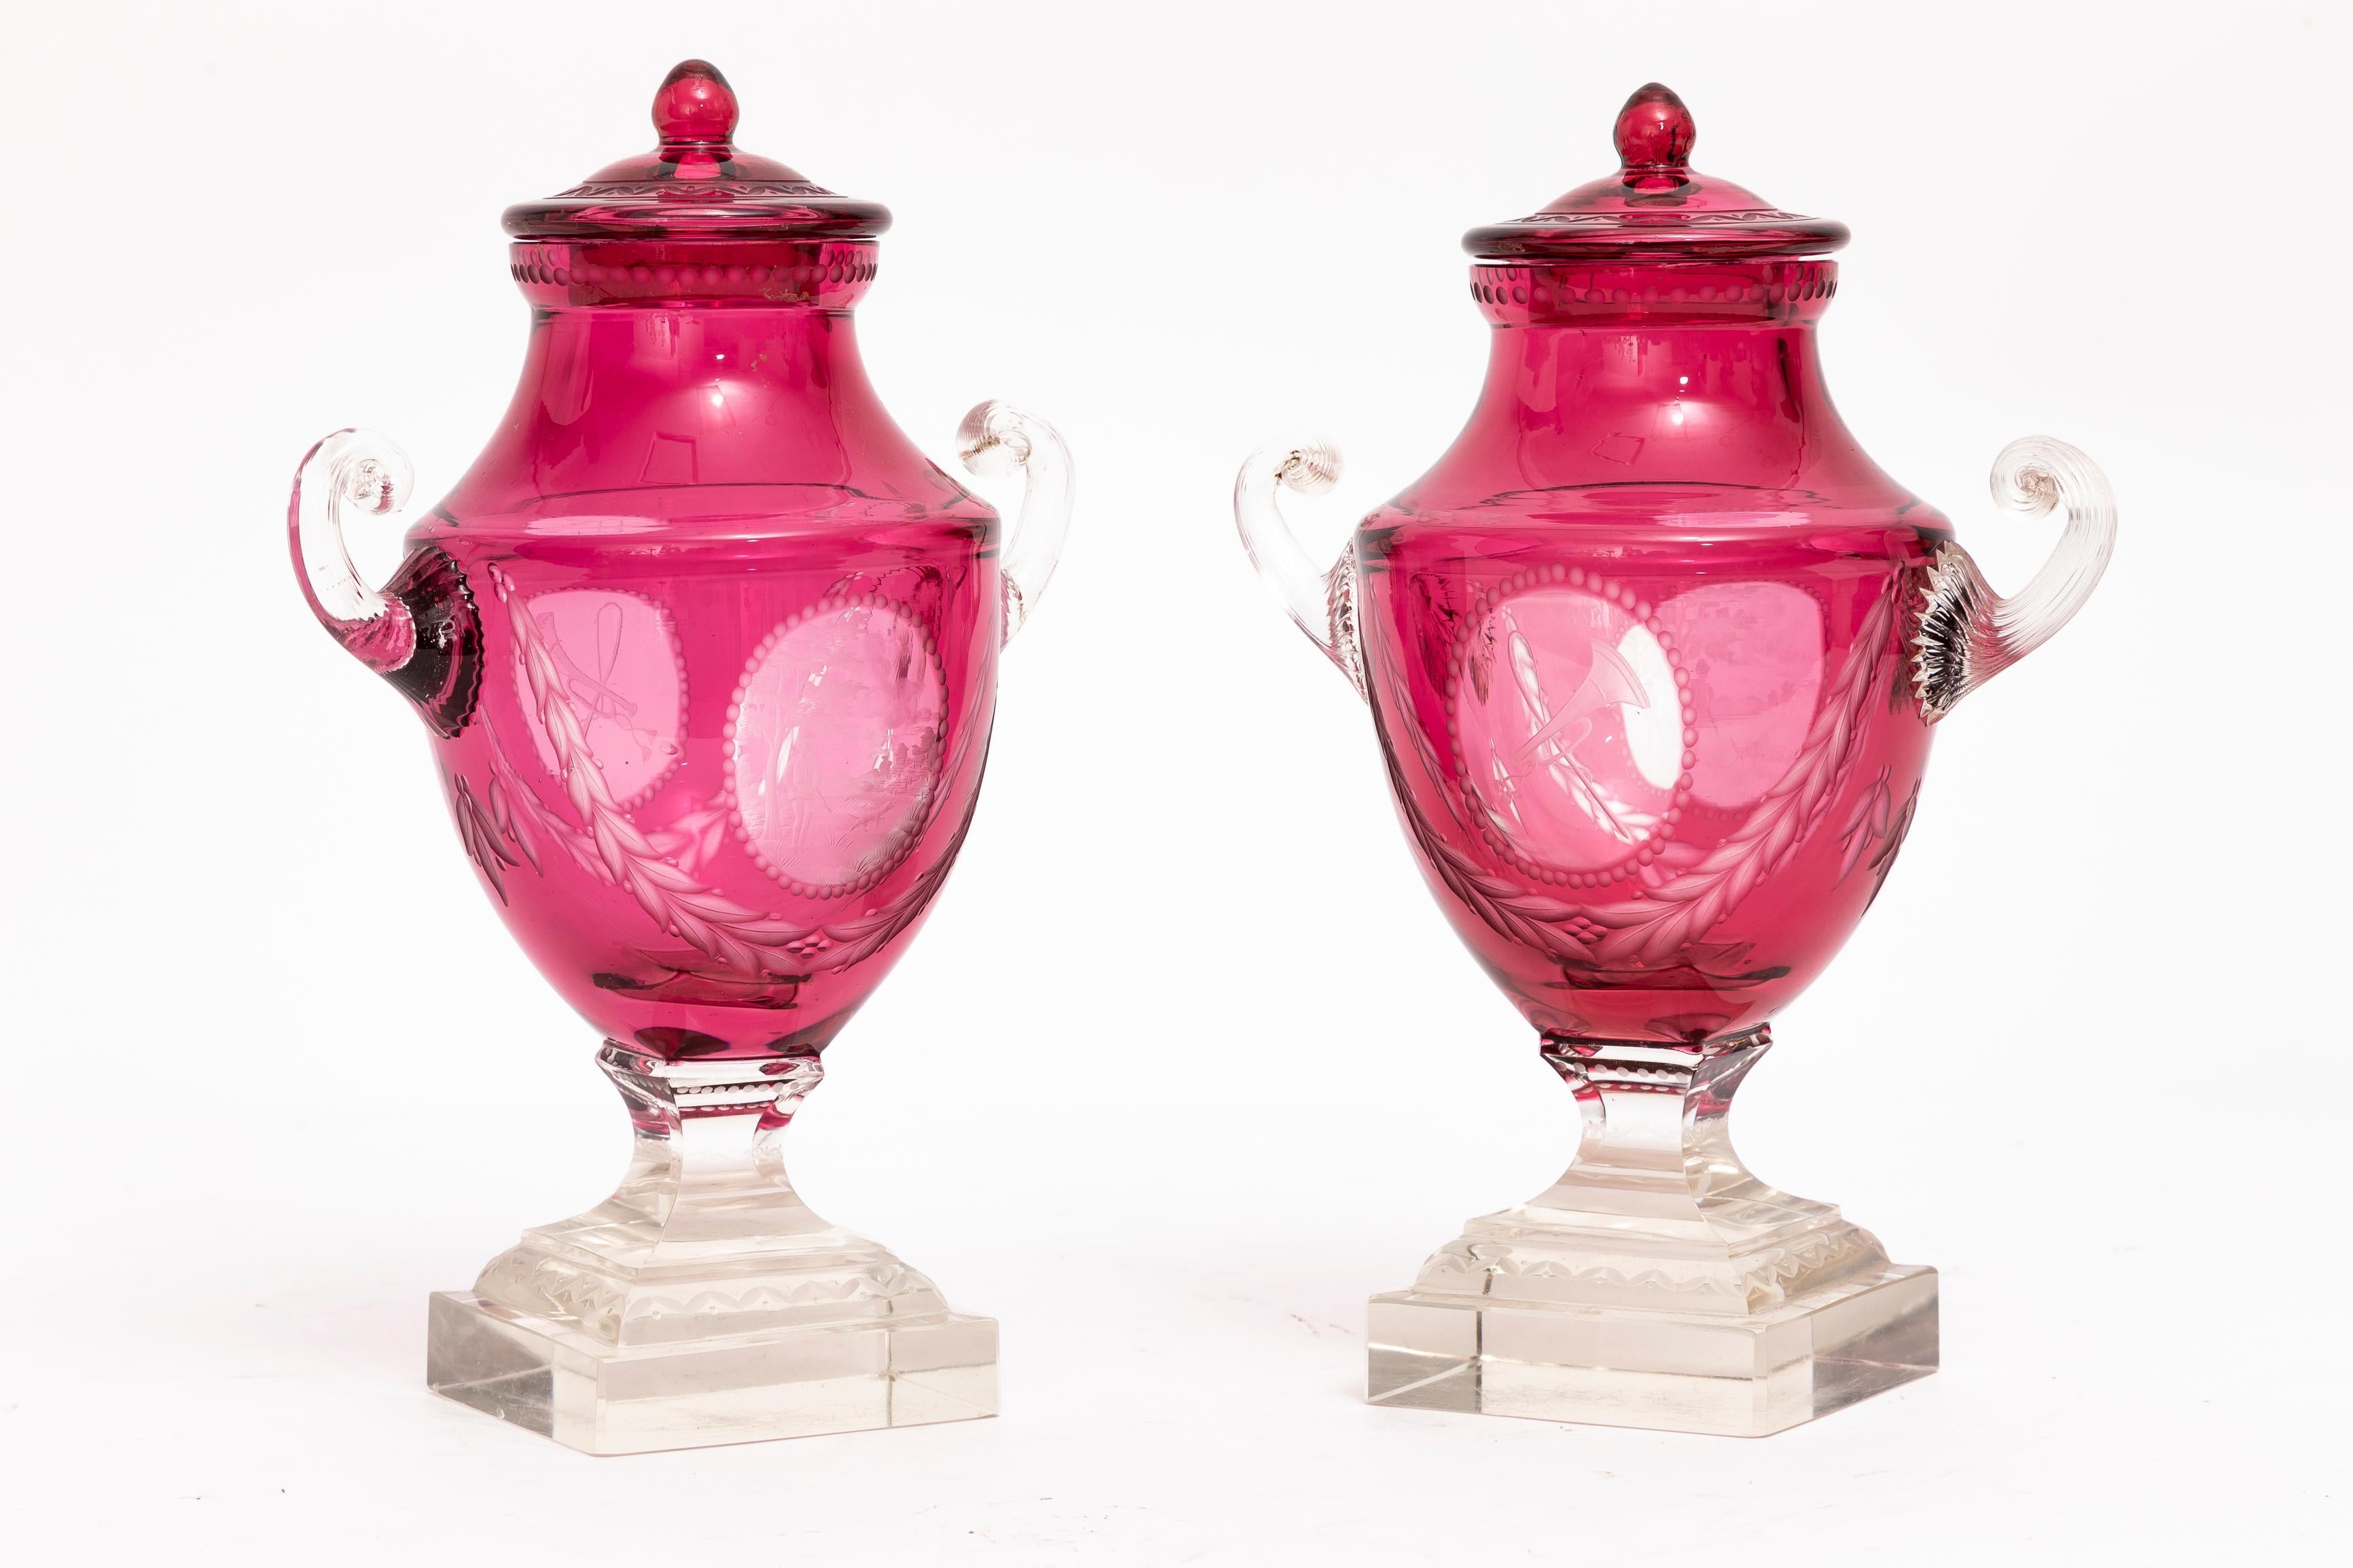 Magnifique paire de vases de chasse au trophée en cristal doublement recouvert de canneberges taillées dans la masse, avec des poignées en coquillage et des bases à gradins, attribuée à Baccarat. Ces vases se caractérisent par leur riche teinte